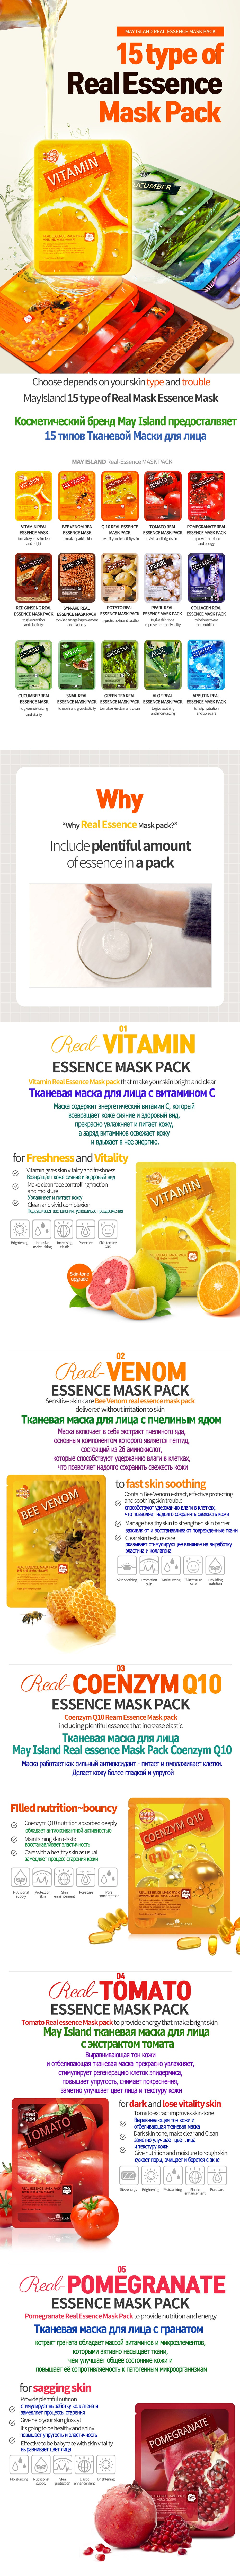 MAY ISLAND Vitamin Real Essence Mask Pack (10 Sheets)